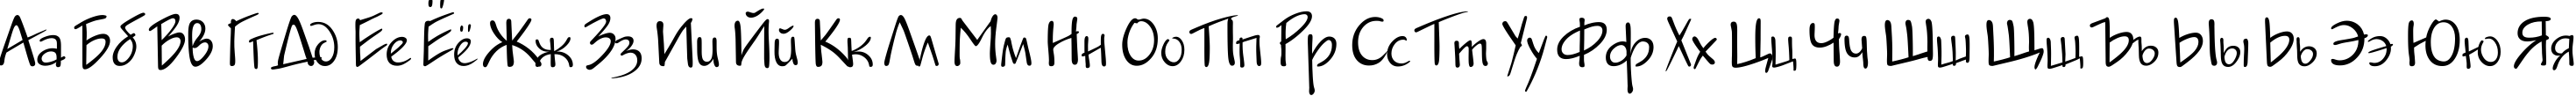 Пример написания русского алфавита шрифтом JakobCTT